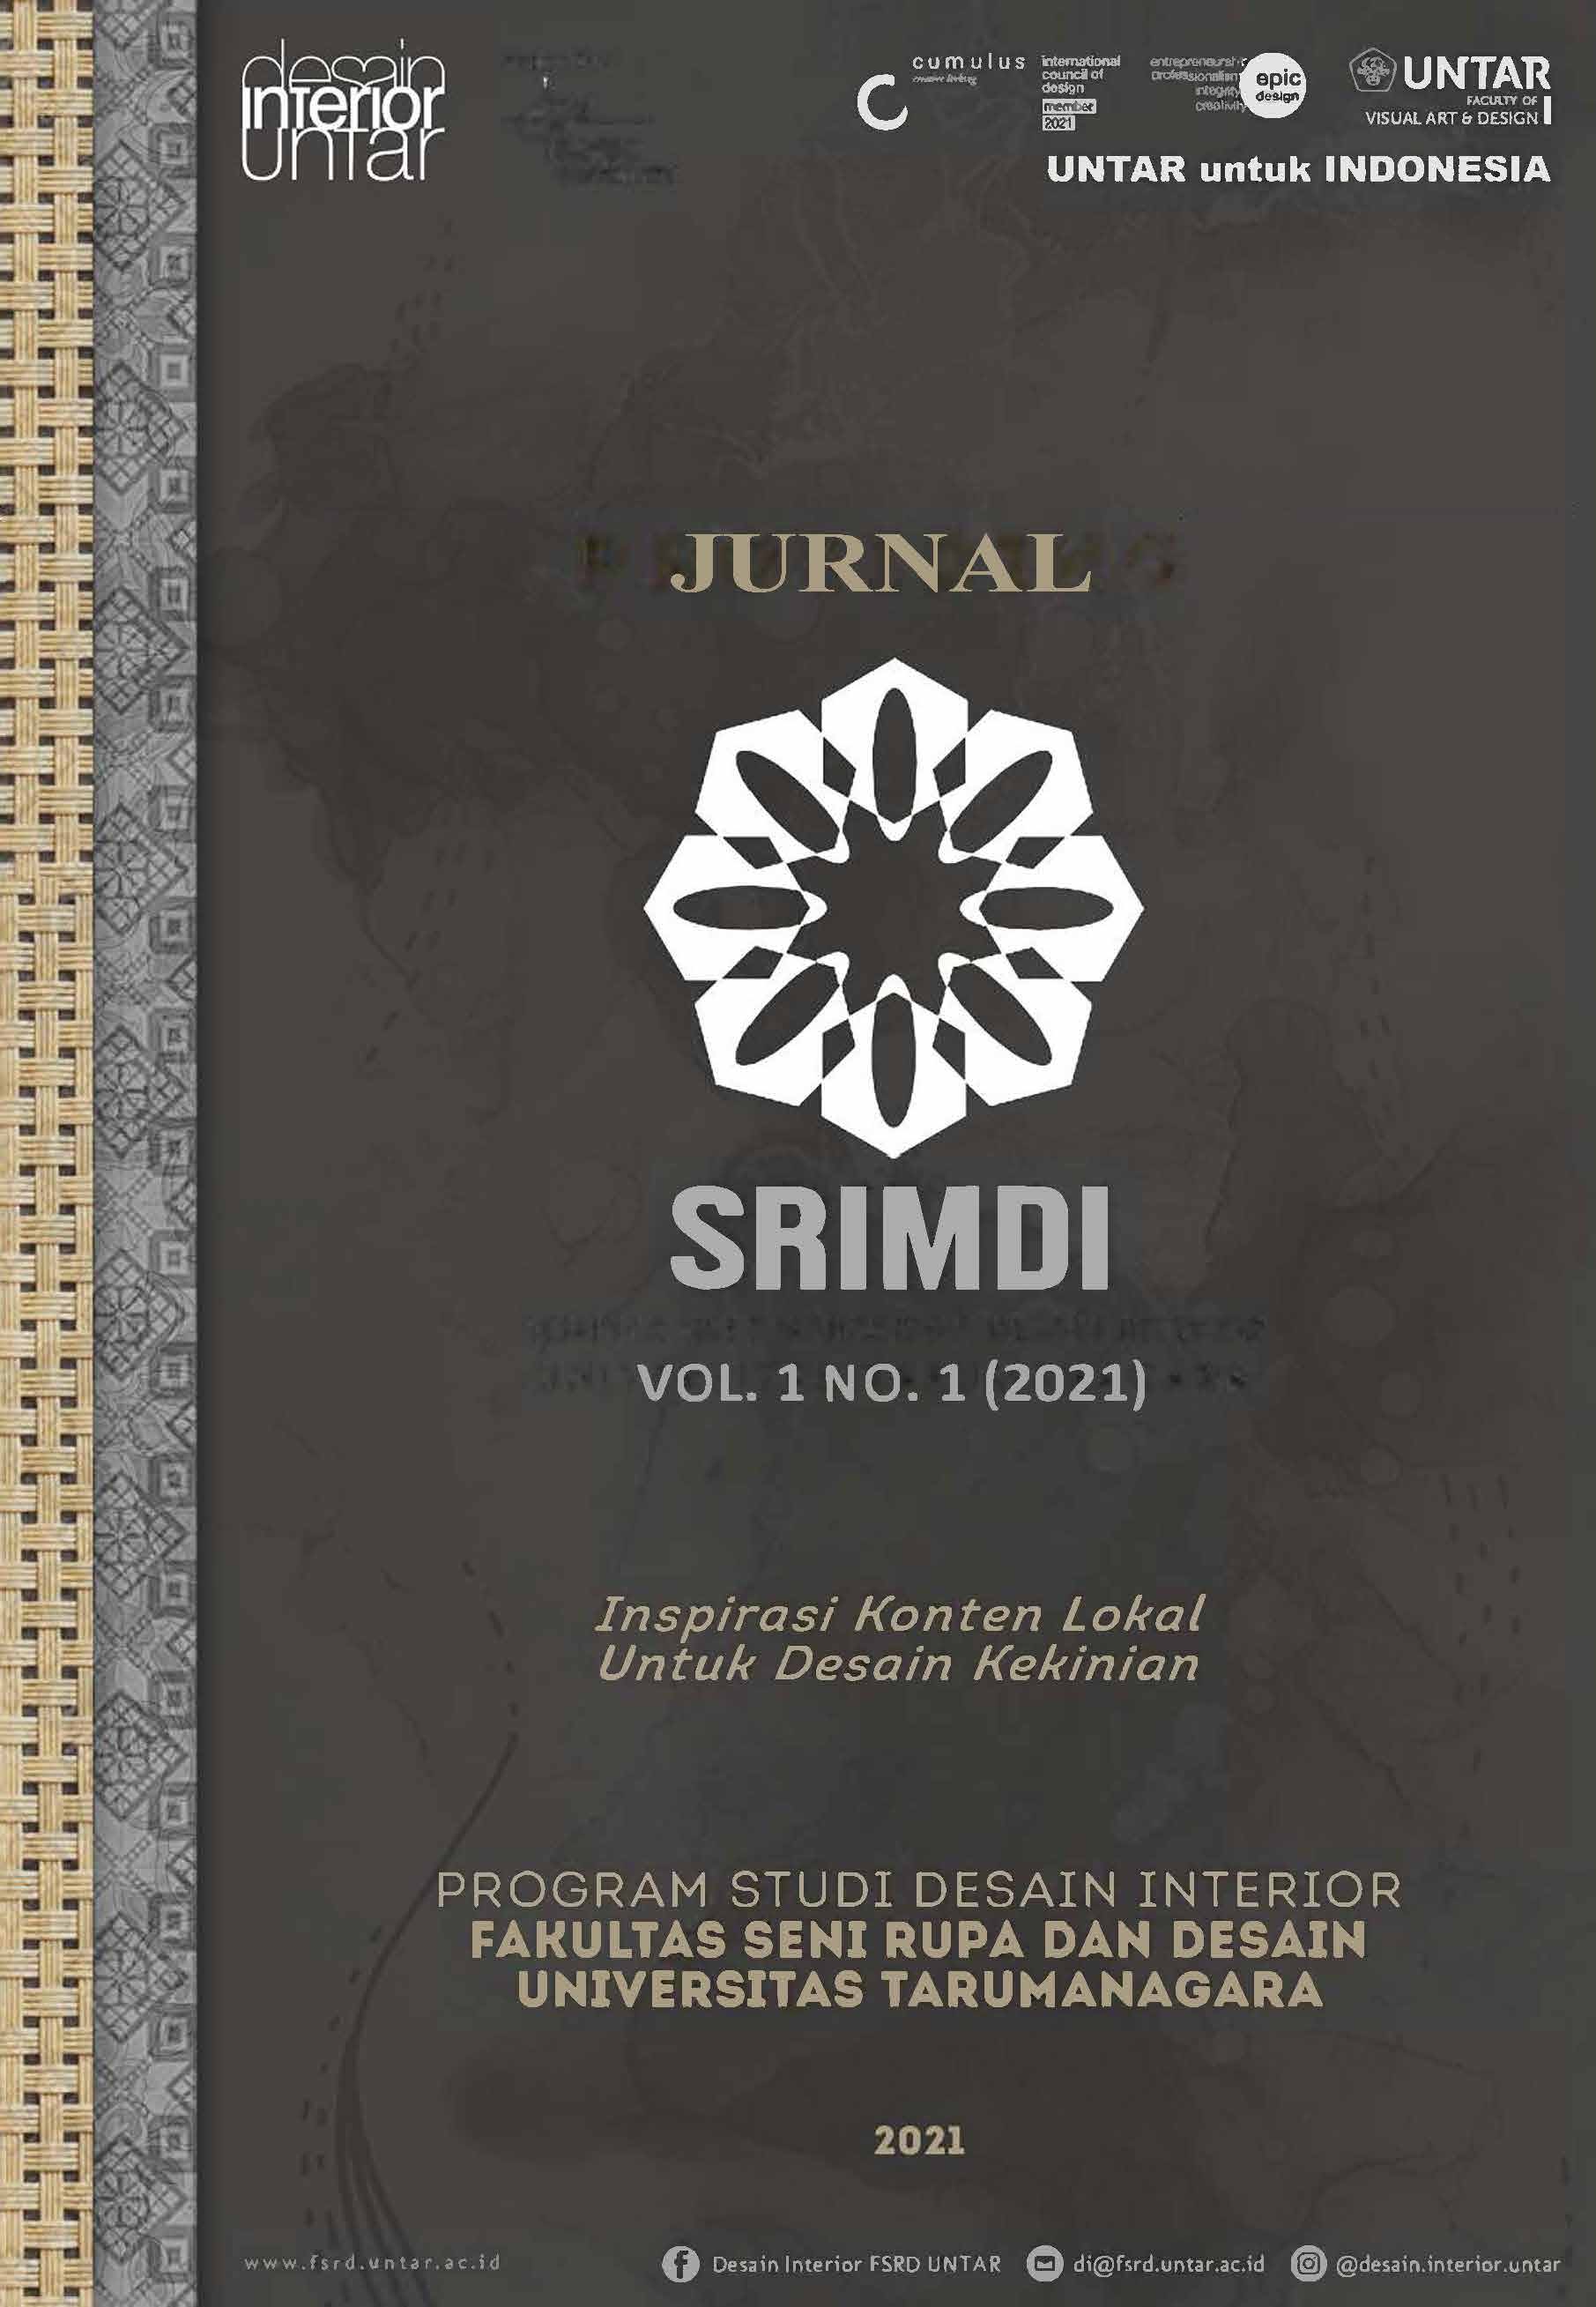 					View Vol. 1 No. 1 (2021): Vol. 1 No. 1 (2021): SRIMDI Januari - Juli 2021
				